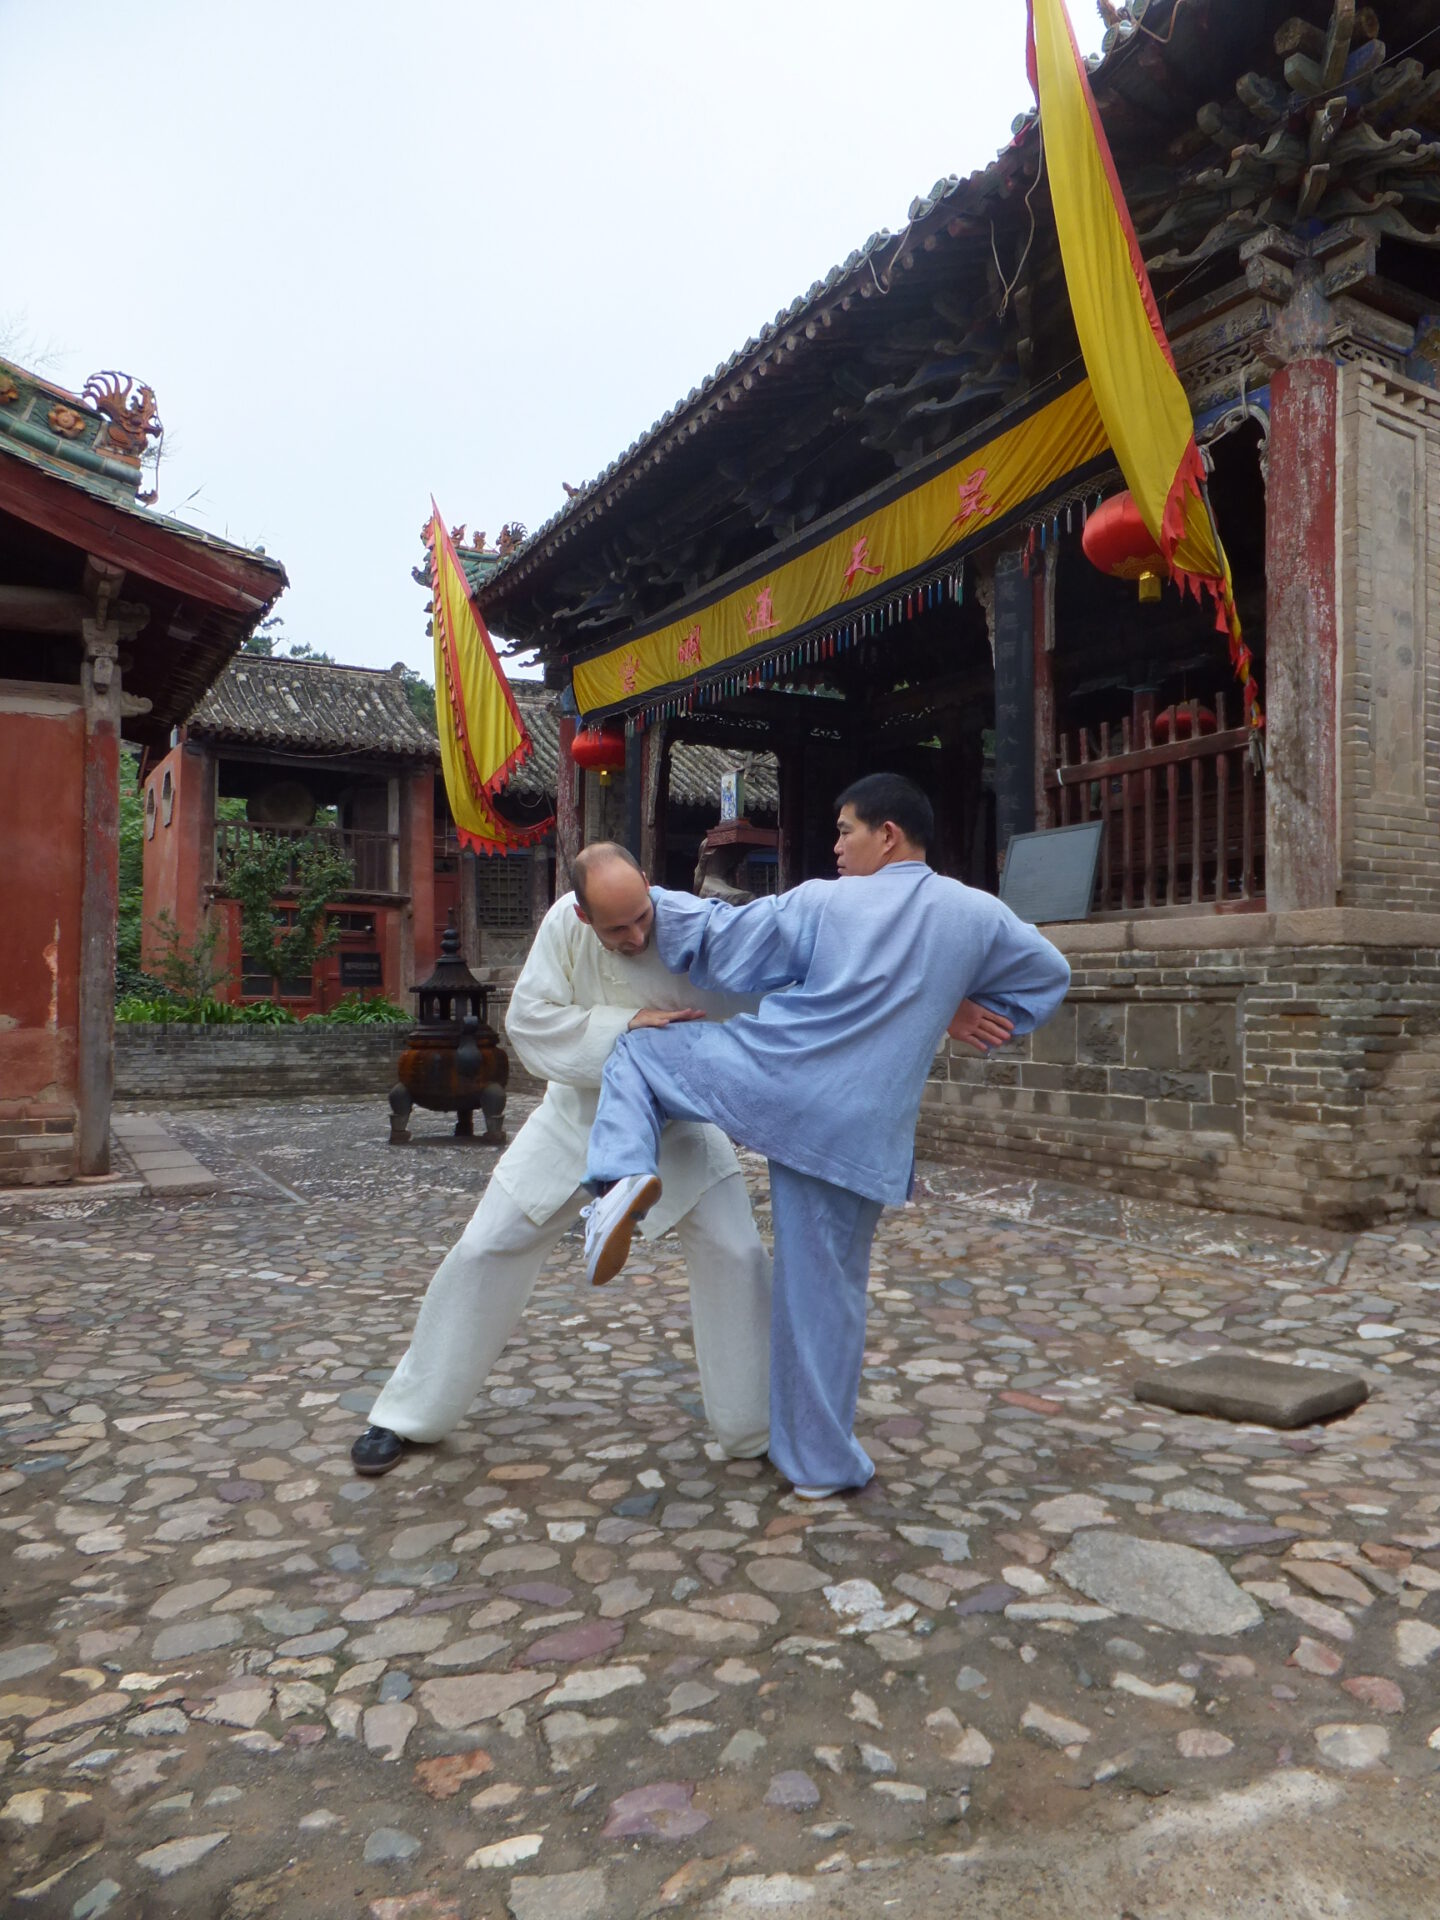 Training in China - Anwendungstraining mit Großmeister Shen Xijing im Kloster der Jadequelle